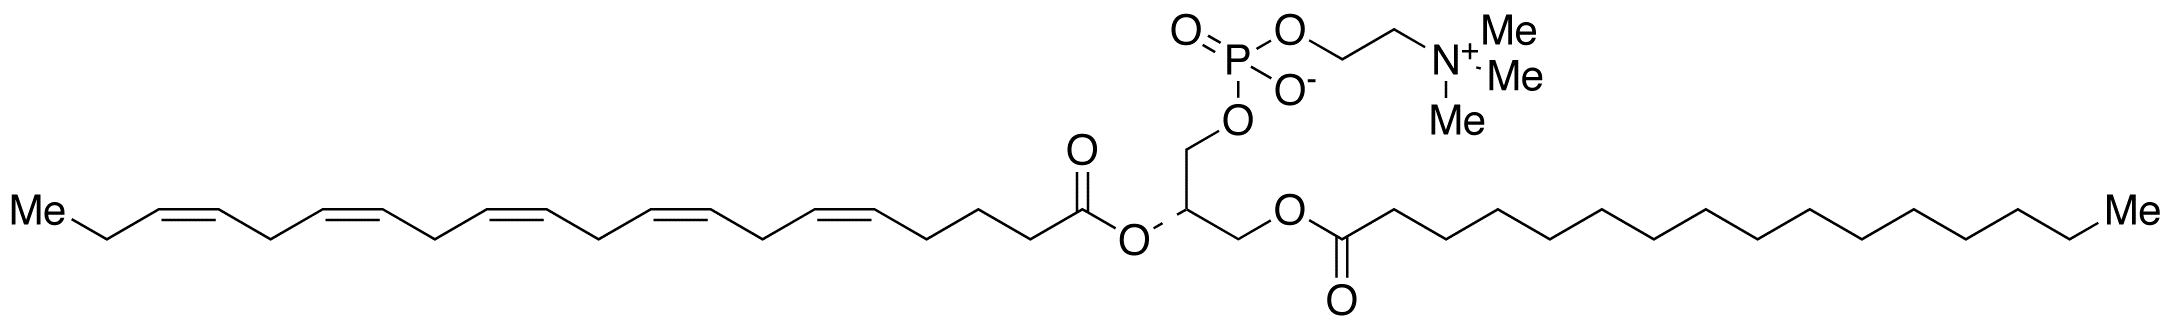 Palmitoyleicosapentaenoyl Phosphatidylcholine